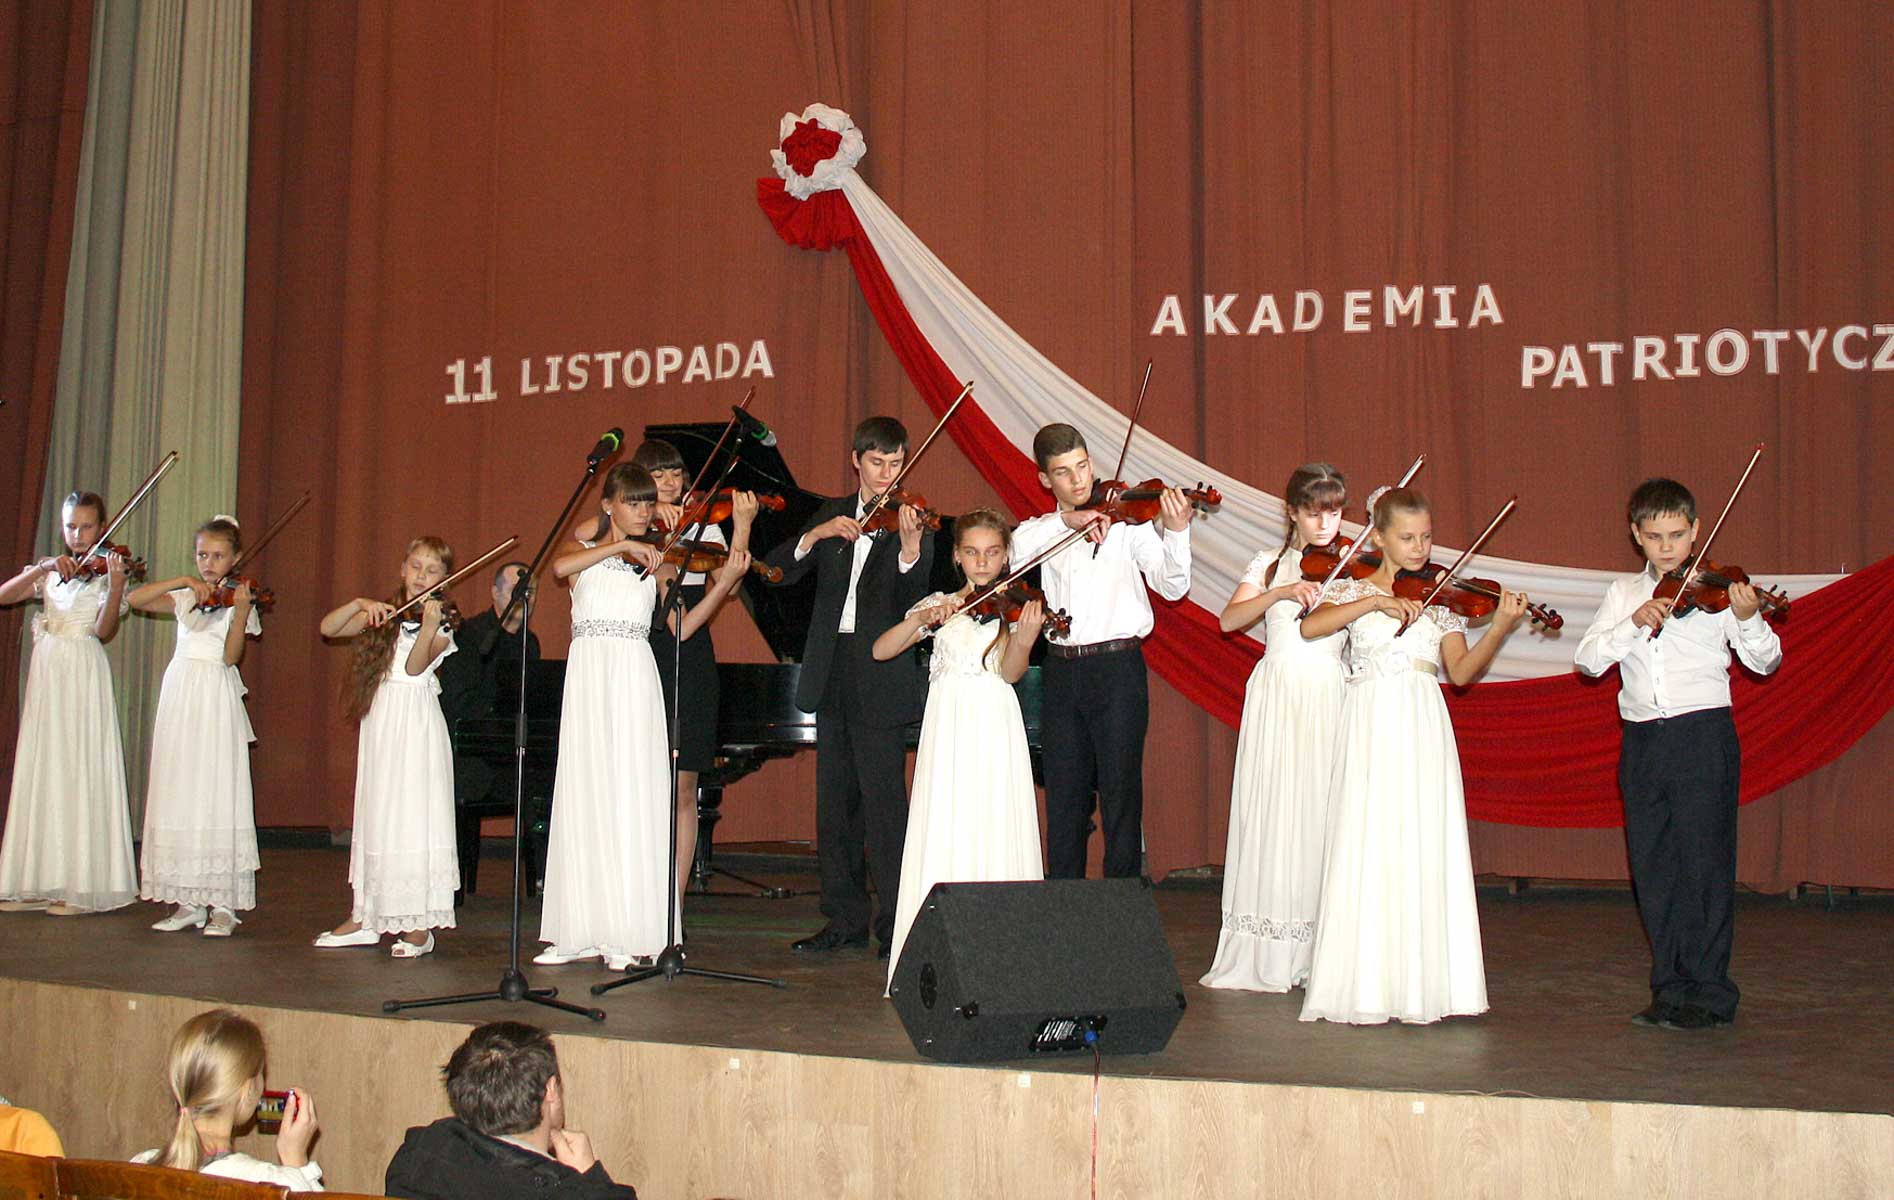 Zespół instrumentalny ze Związku Polaków Makarowa zadziwili widzów wysokim profesjonalizmem wykonując kompozycję klasycznych walców 